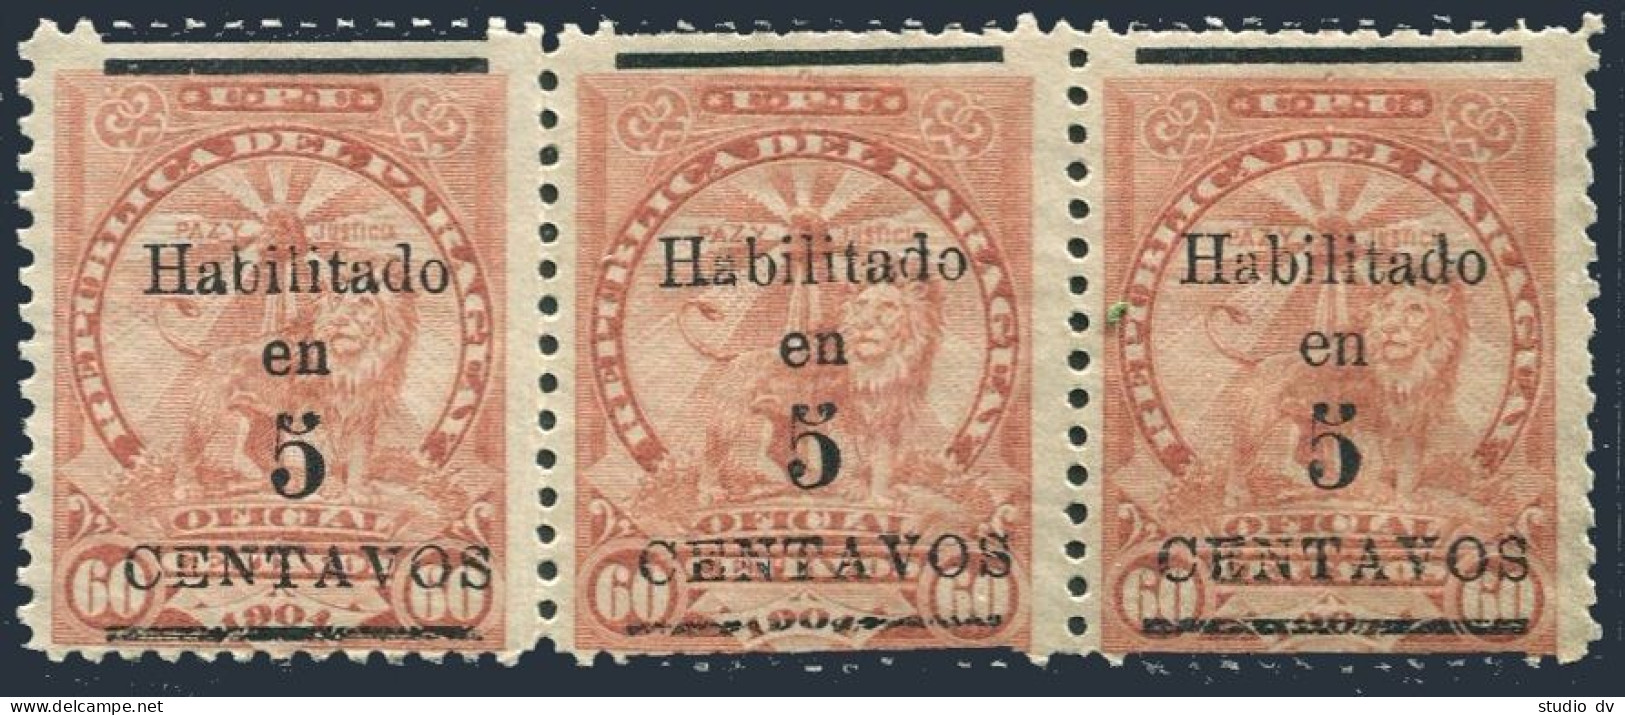 Paraguay 138 Strip/3,mint No Gum.Mi 142. Sentinel Lion At Rest, Surcharged,1908. - Paraguay